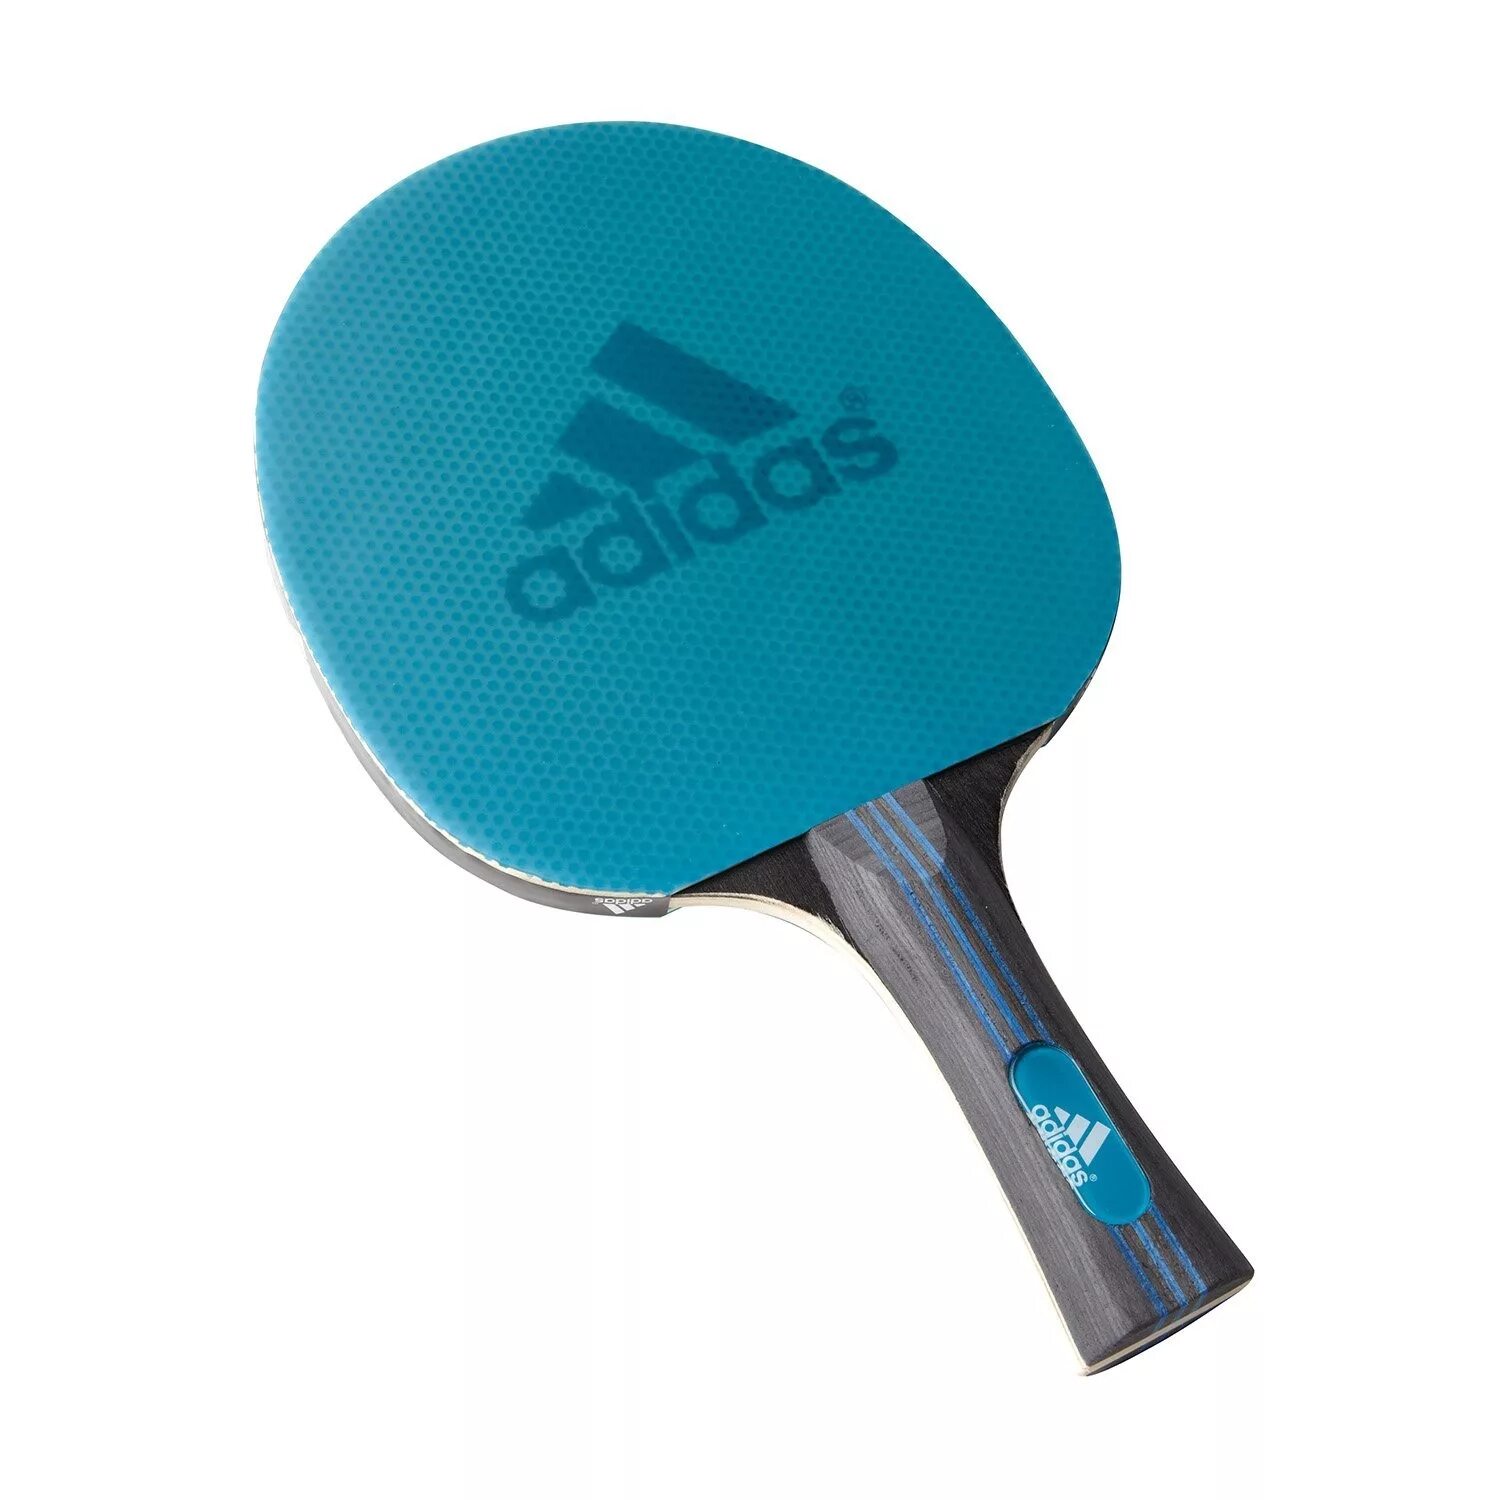 Adidas Laser ракетка для настольного тенниса. Ракетка адидас для настольного тенниса. Ракетка адидас для настольного тенниса Vigor 120. Ракетка для пинг понга adidas.